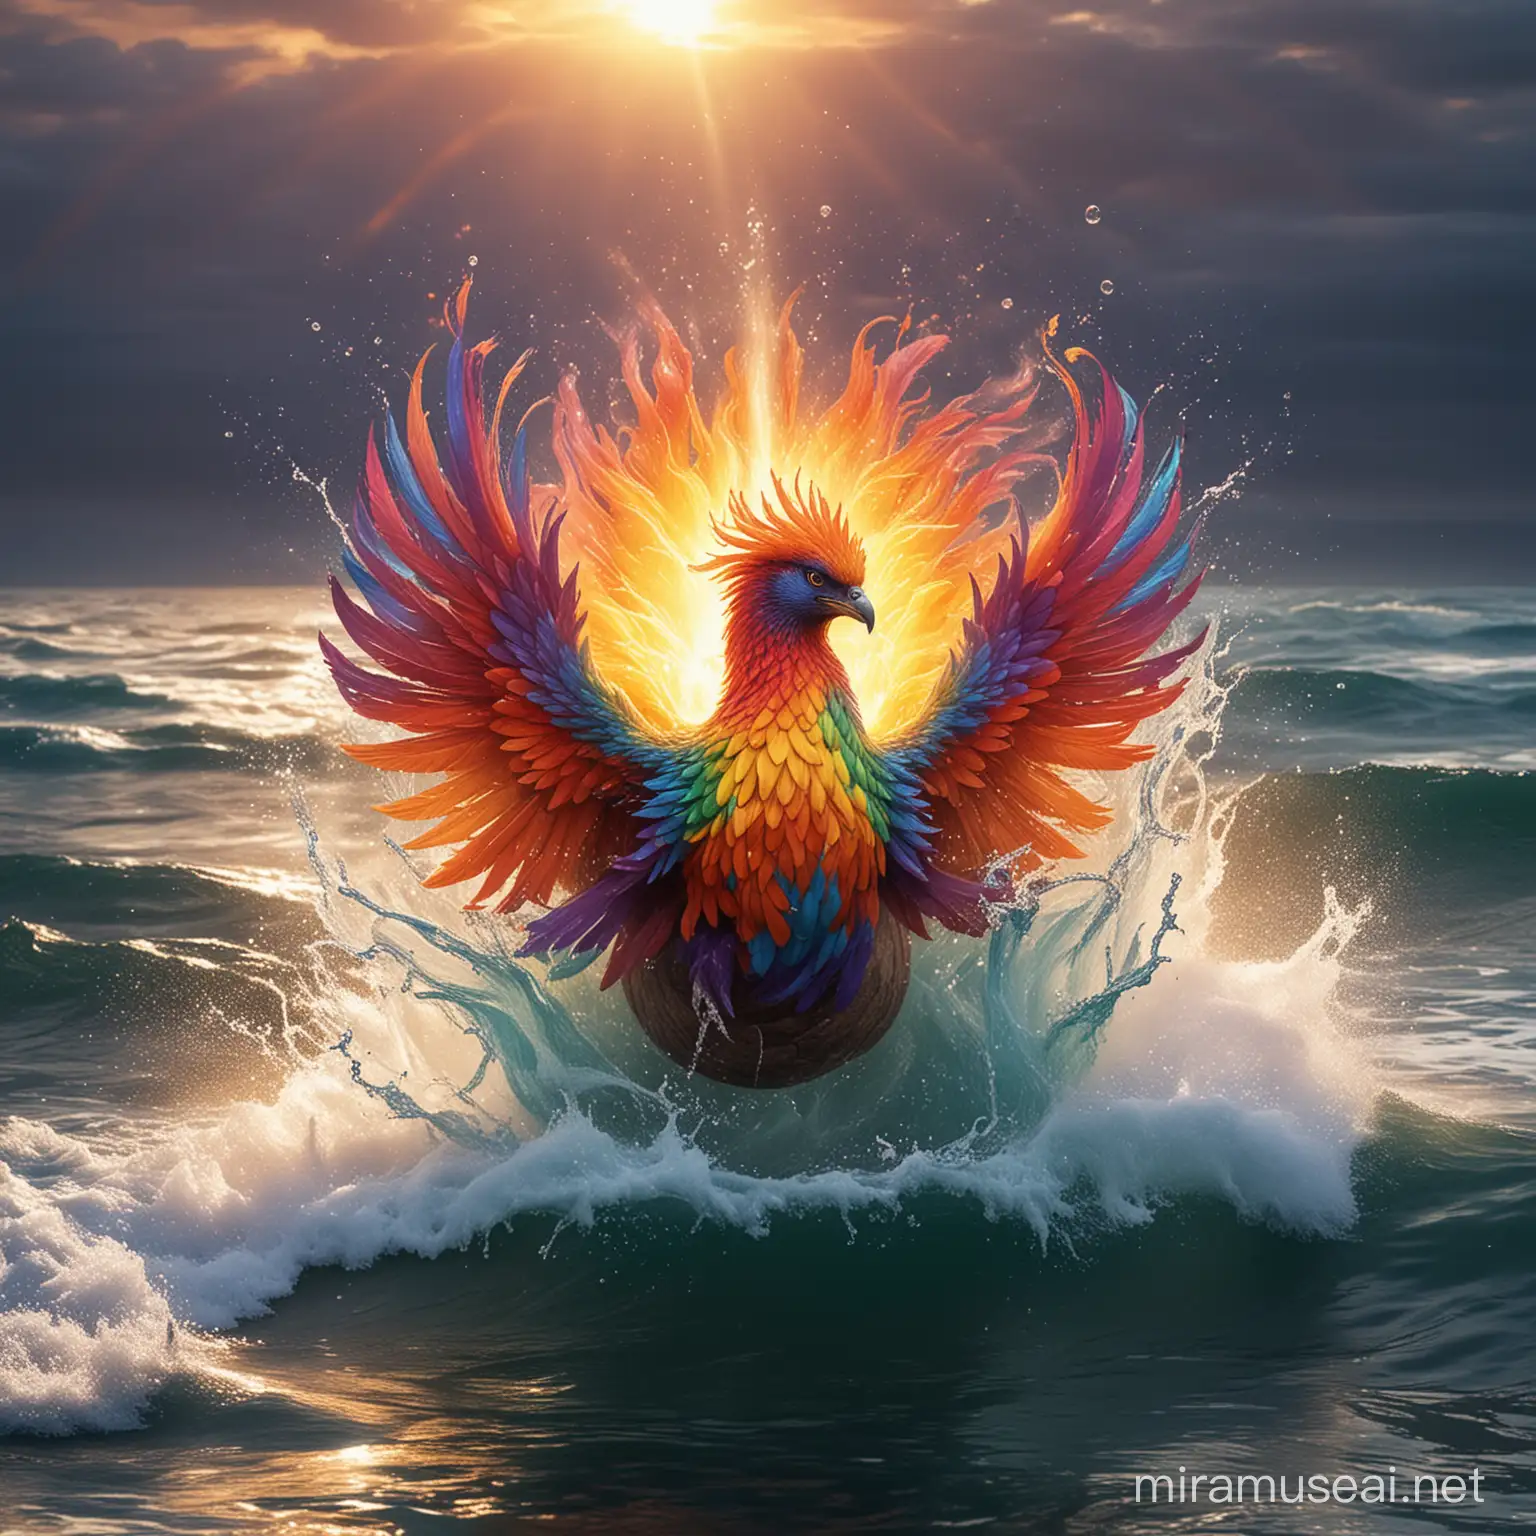 Fiery Rainbow Phoenix Rising from Ocean Waters